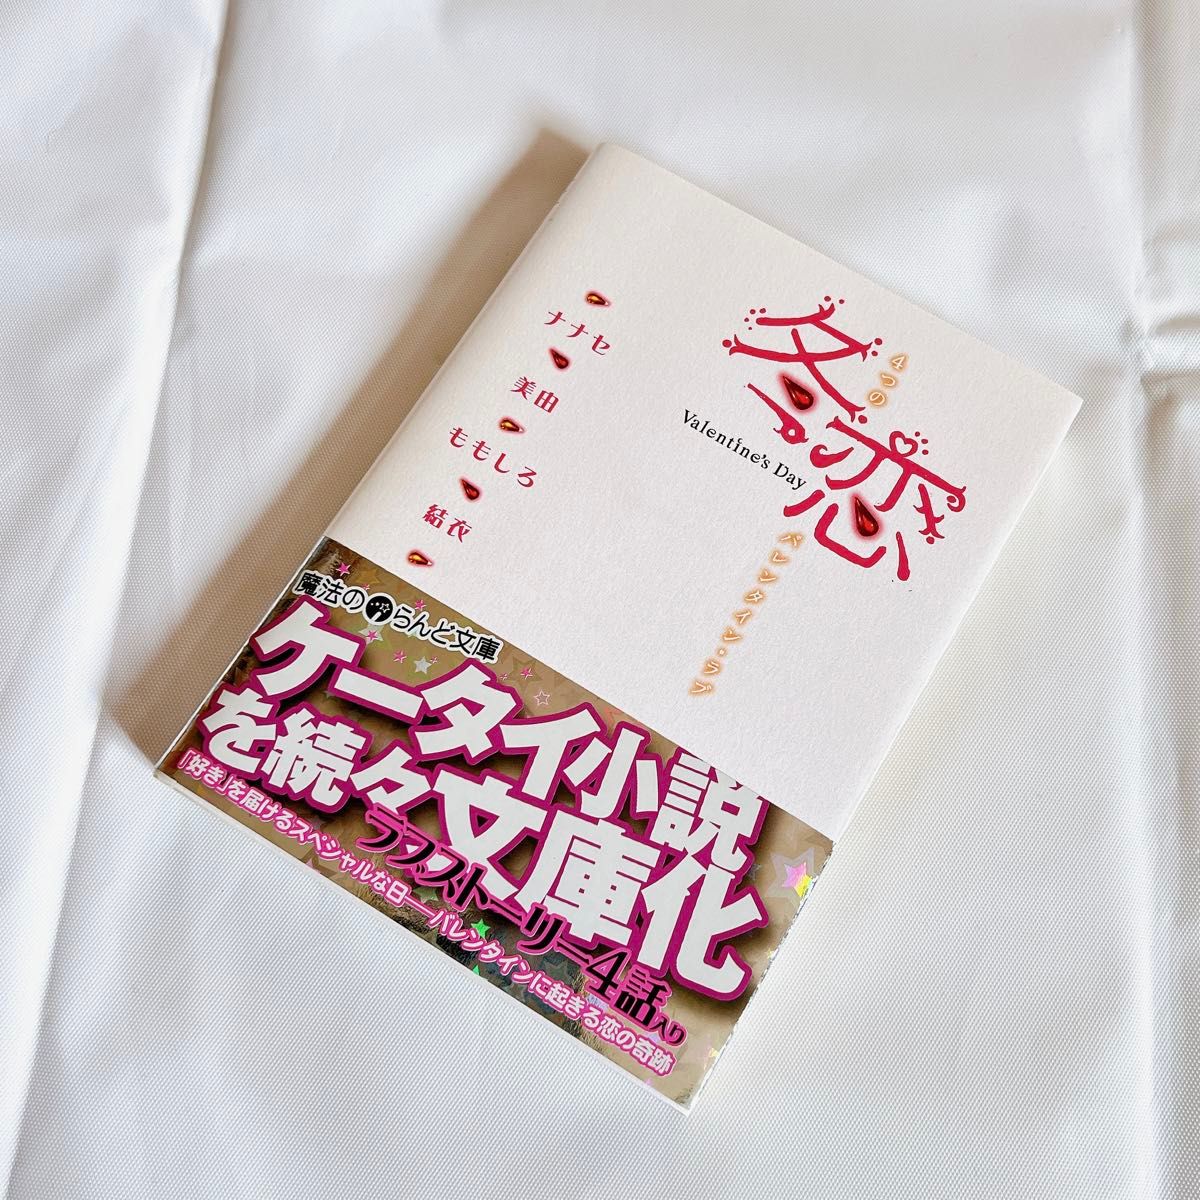 【恋愛小説】冬恋 ４つのバレンタイン・ラブ ／Seven☆love 【ケータイ小説】短編小説 恋物語 《初版》